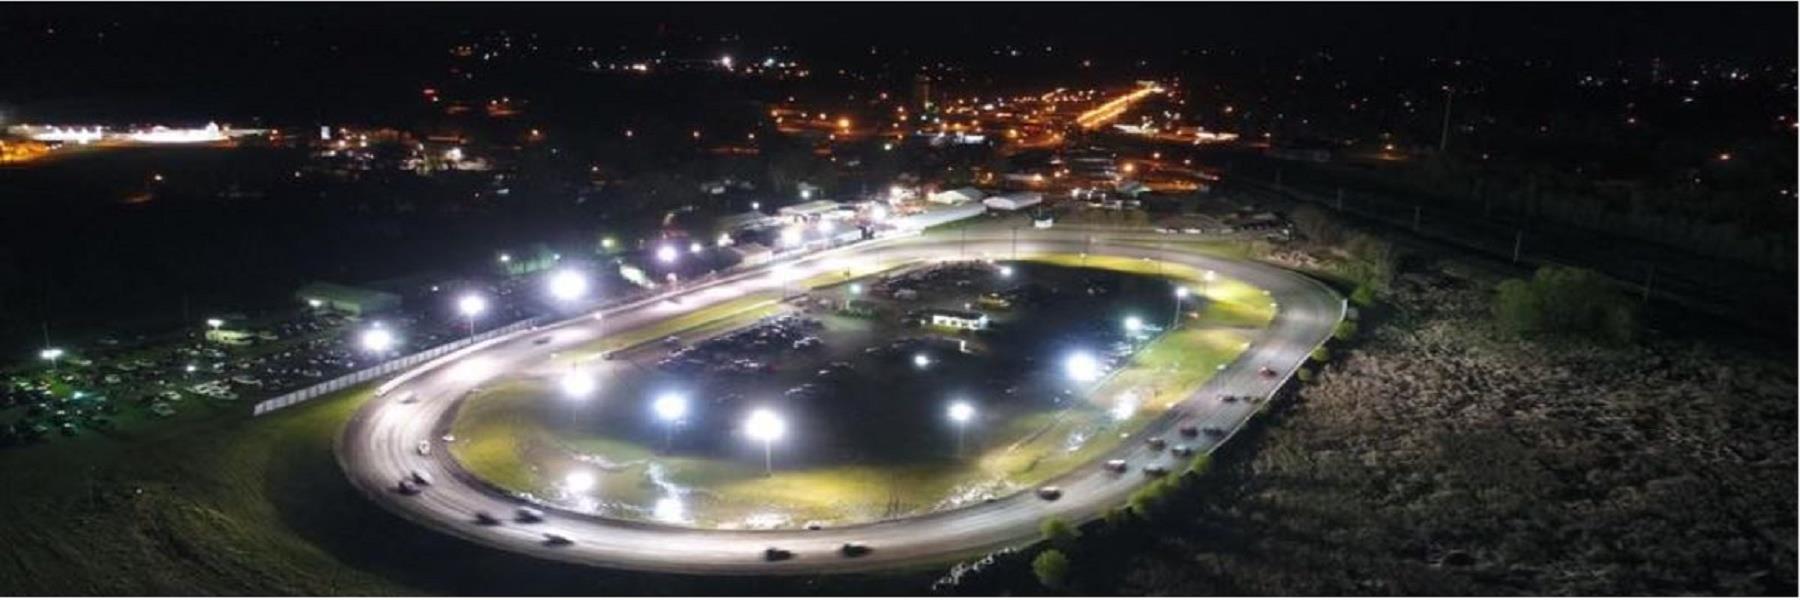 8/20/2021 - Fiesta City Speedway